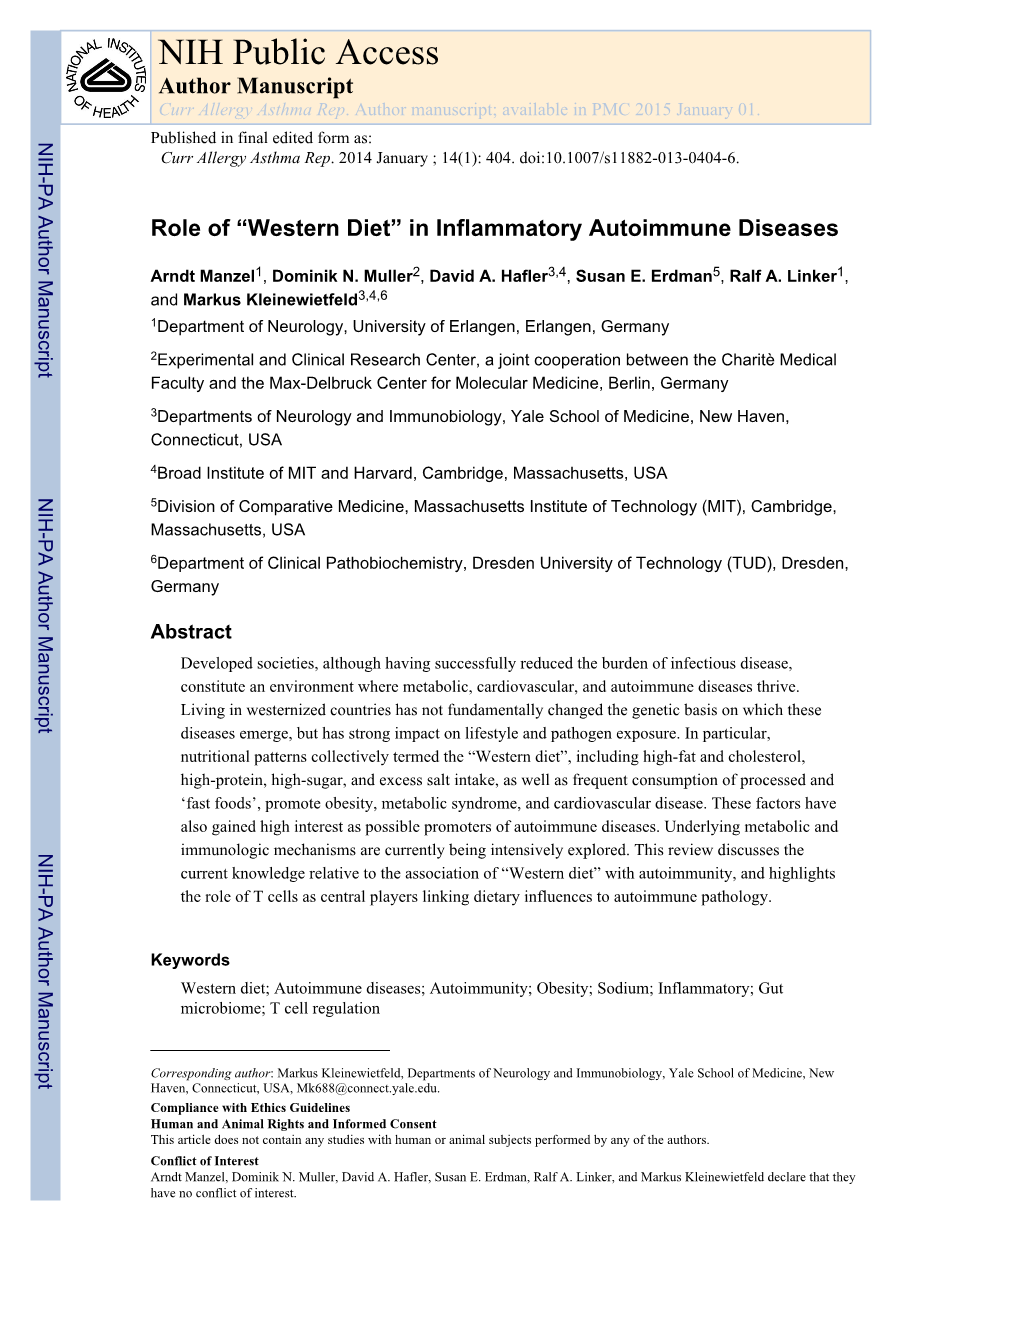 “Western Diet” in Inflammatory Autoimmune Diseases